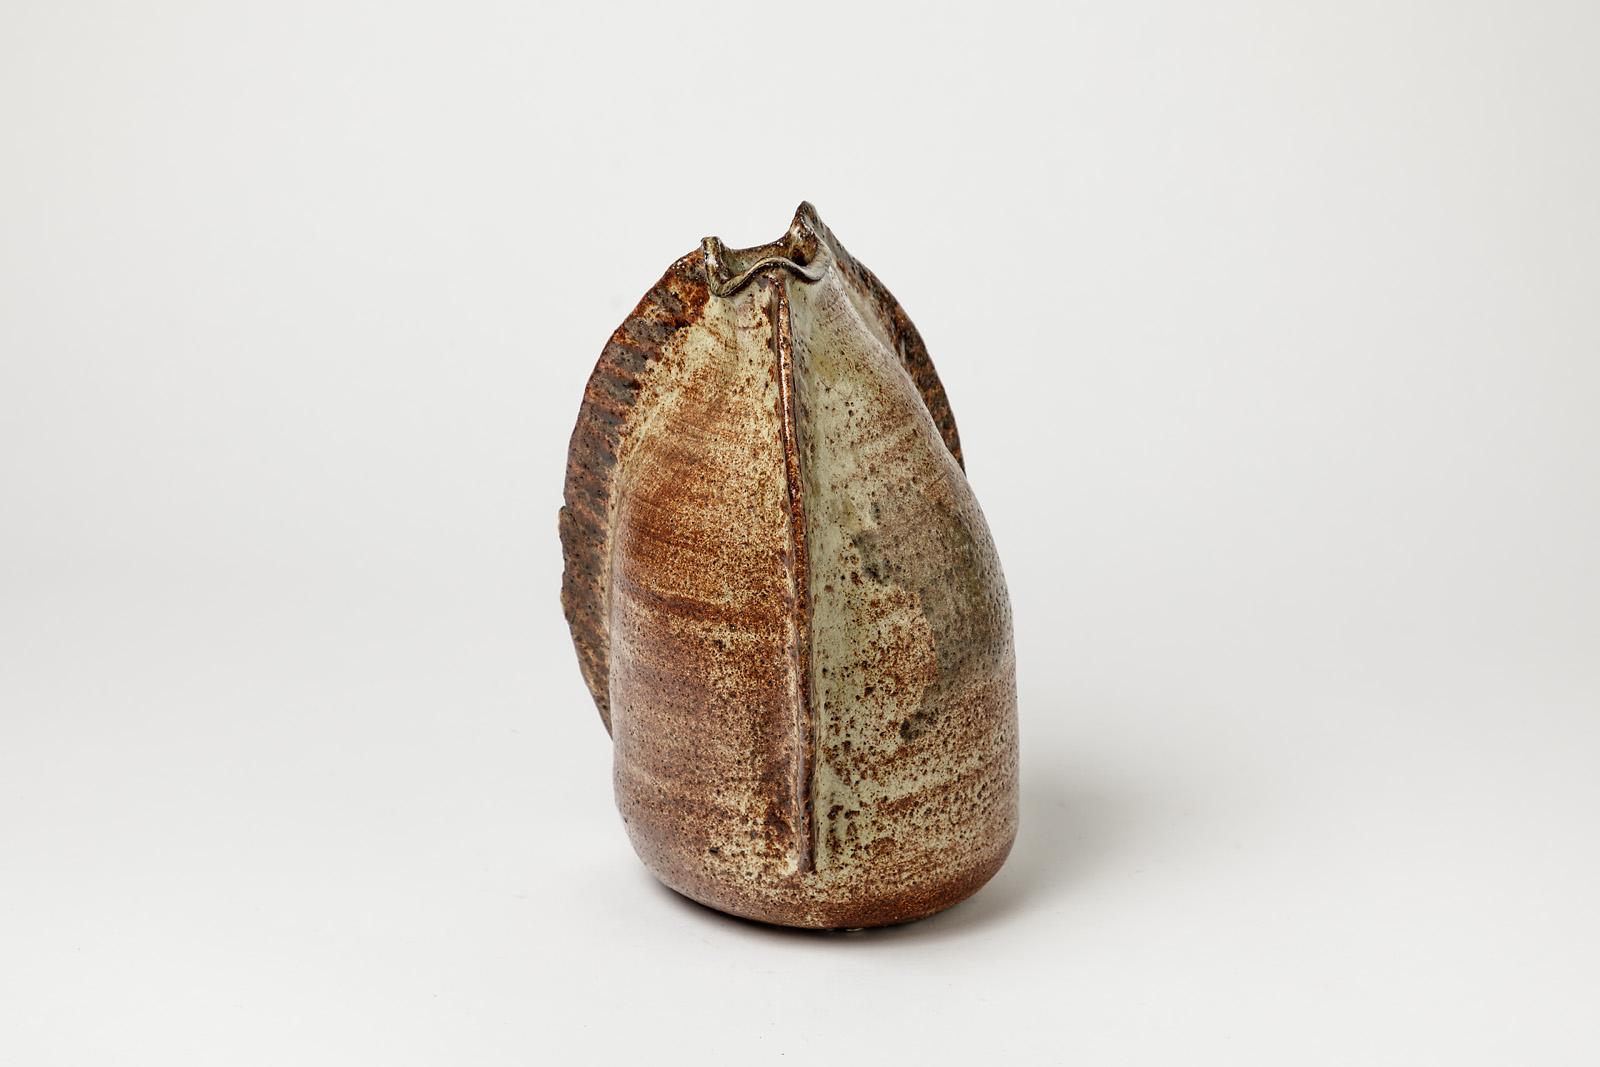 Claude Poli

Élégant vase en céramique brun zoomorphe de Claude Poli

Belle glaçure de poterie brune, signée sous la base.

Dimensions : 25 x 18 x 18cm.